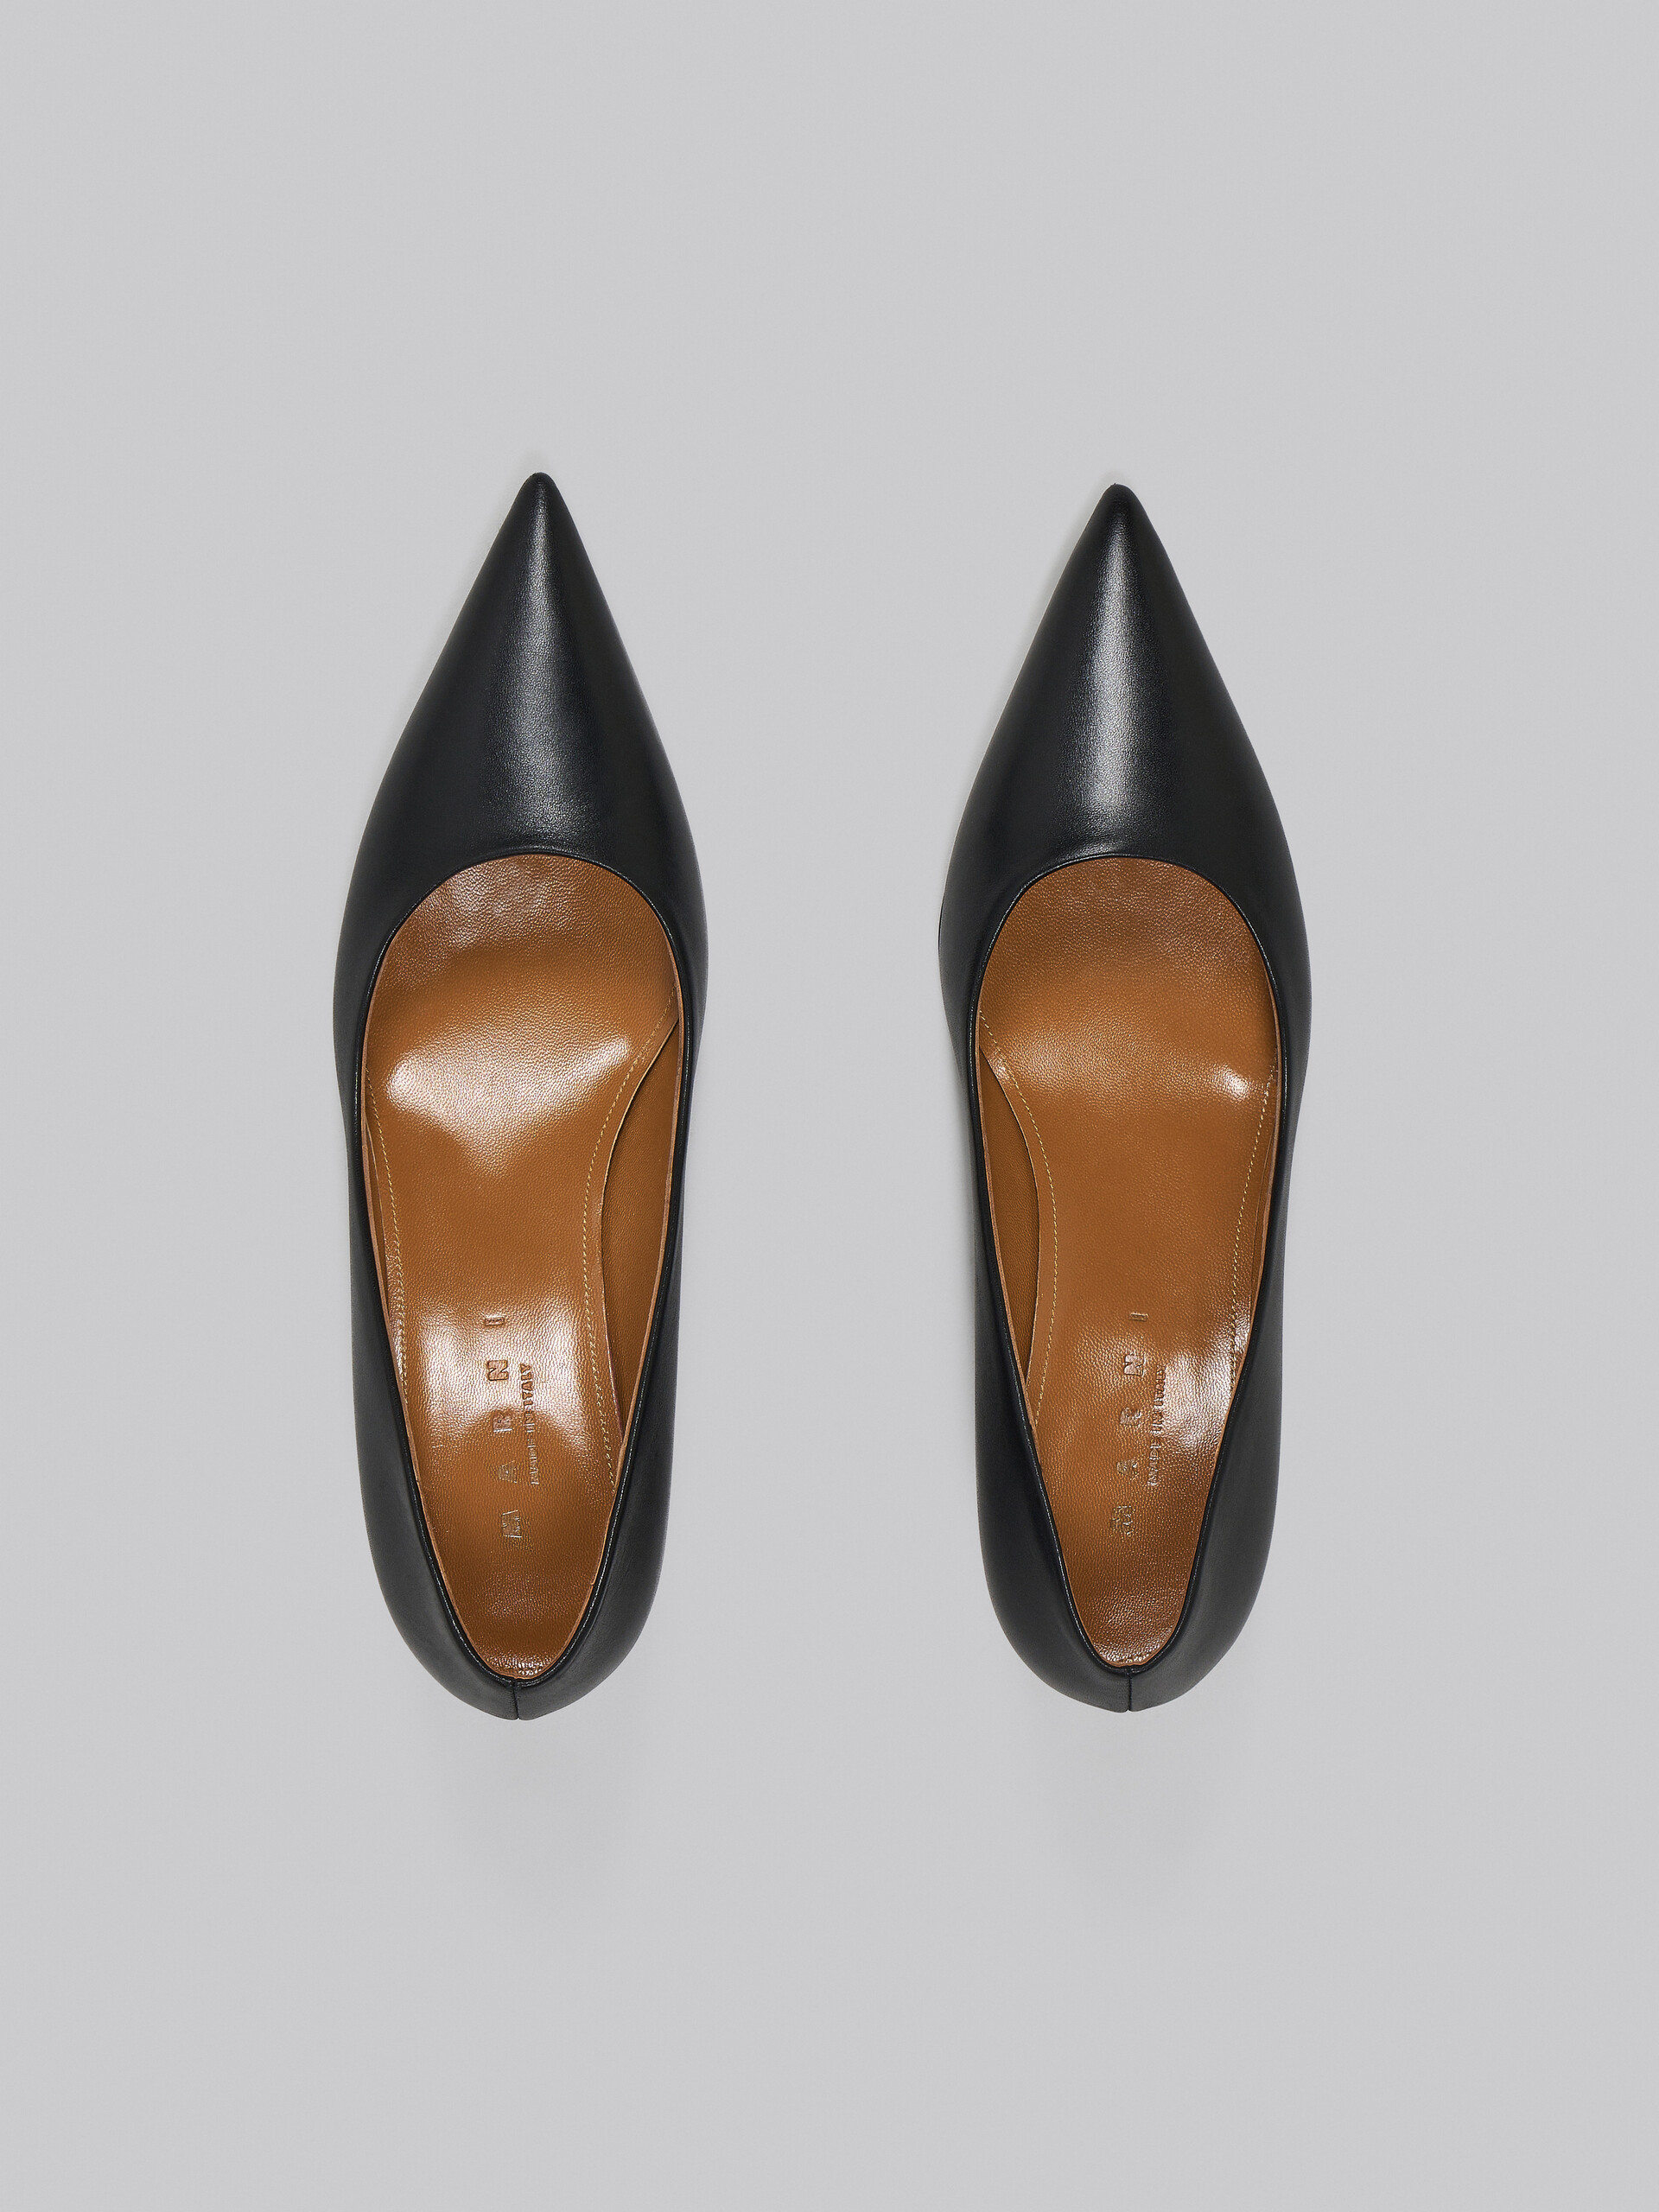 Escarpins en cuir noir - Escarpins - Image 4